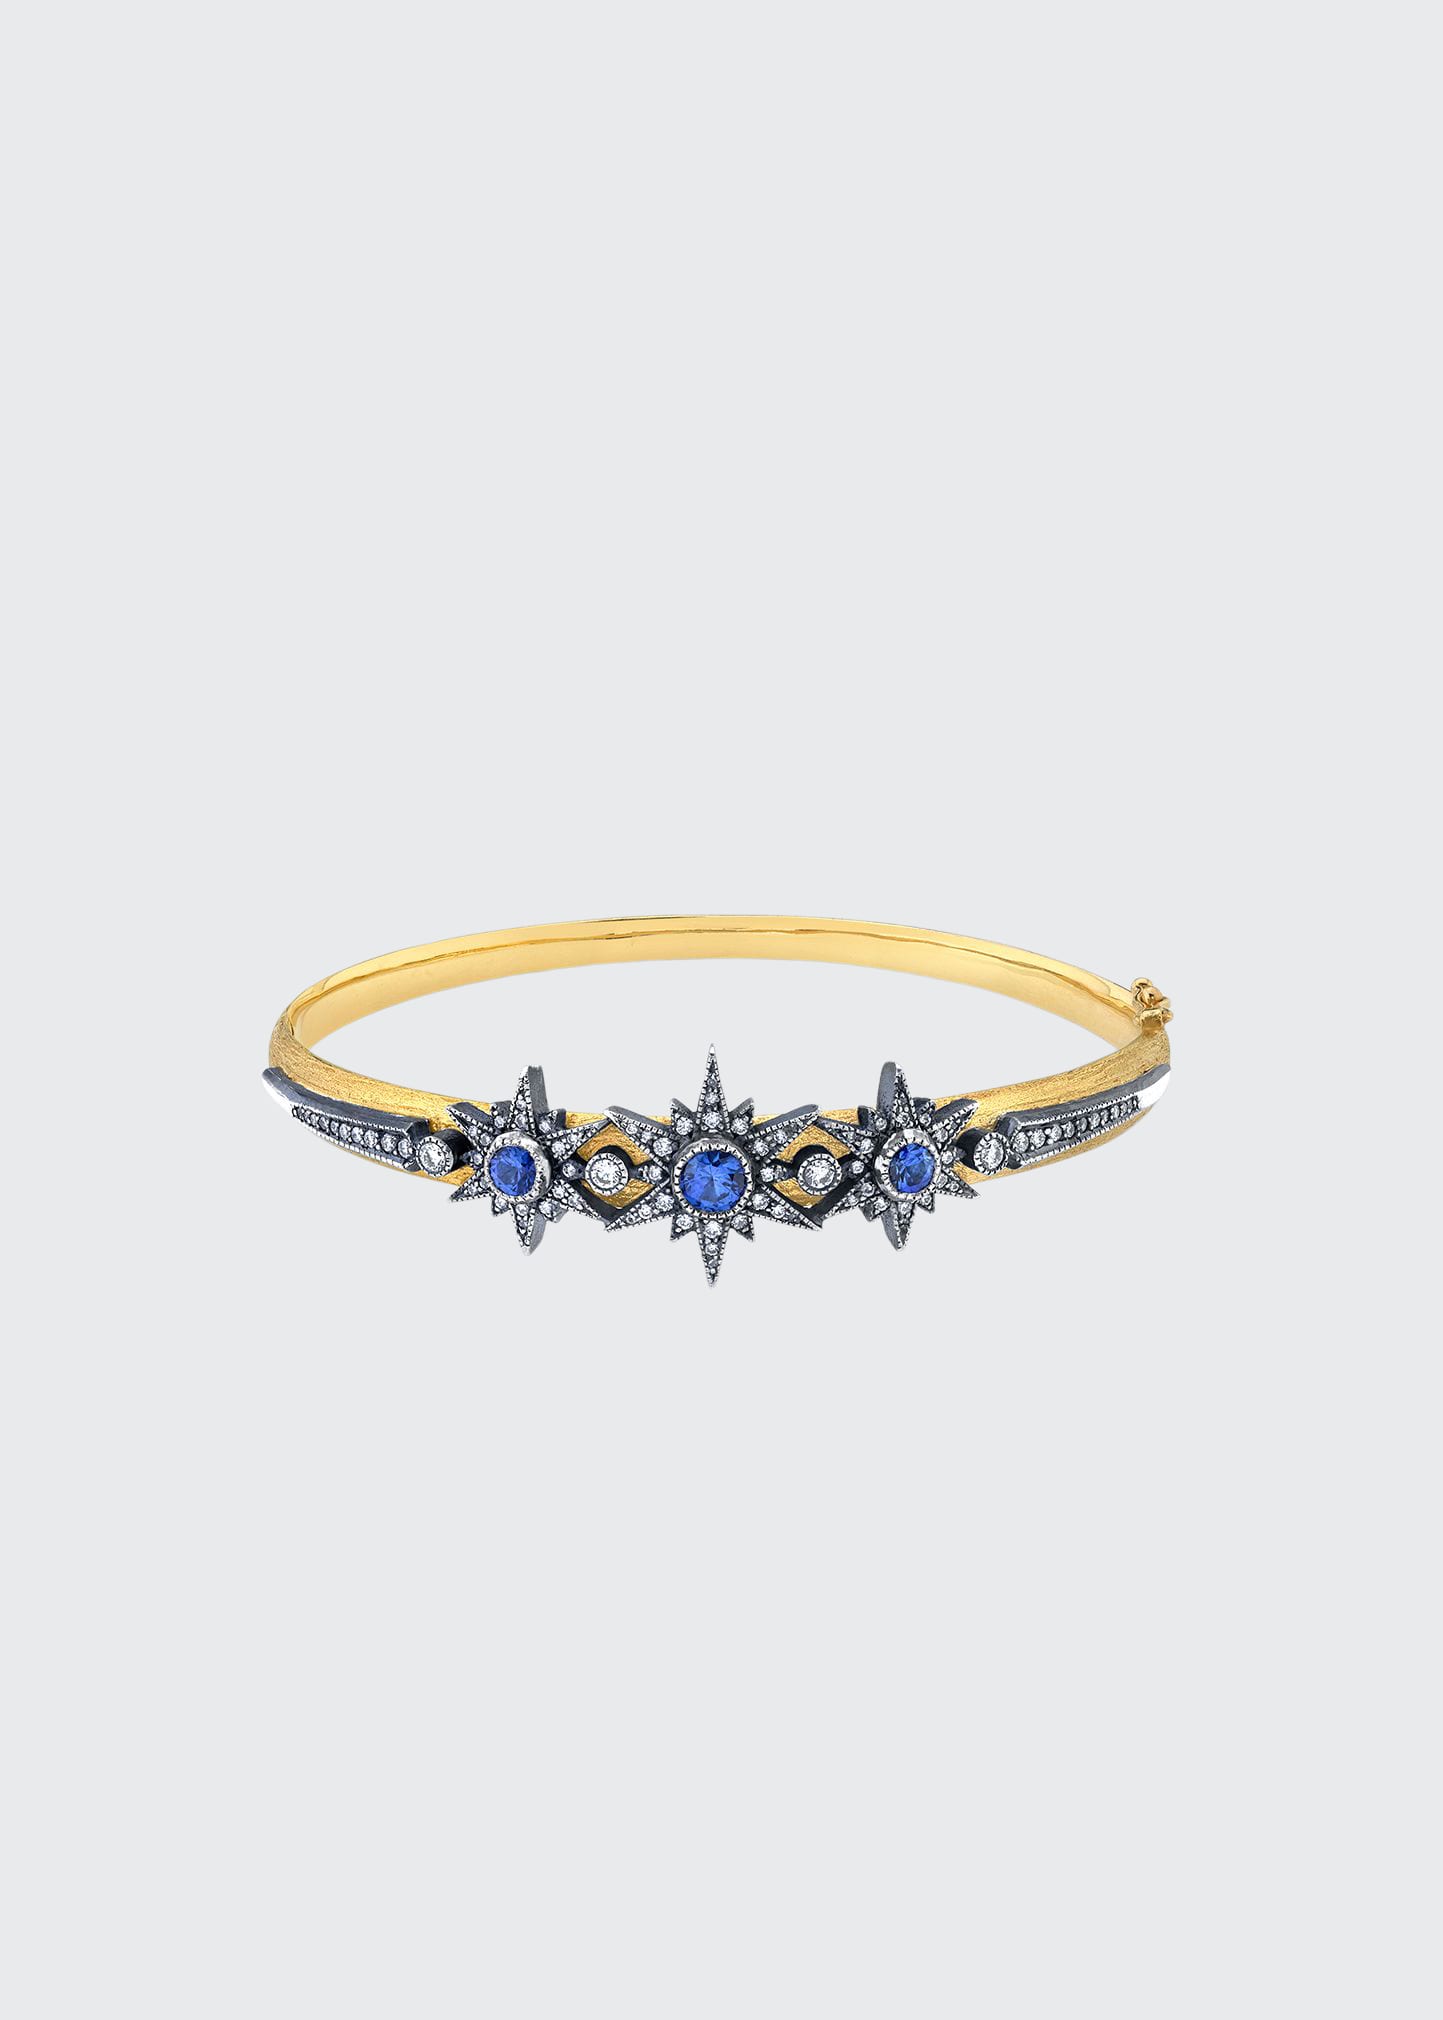 Arman Sarkisyan Sapphire And Diamond Starburst Bangle